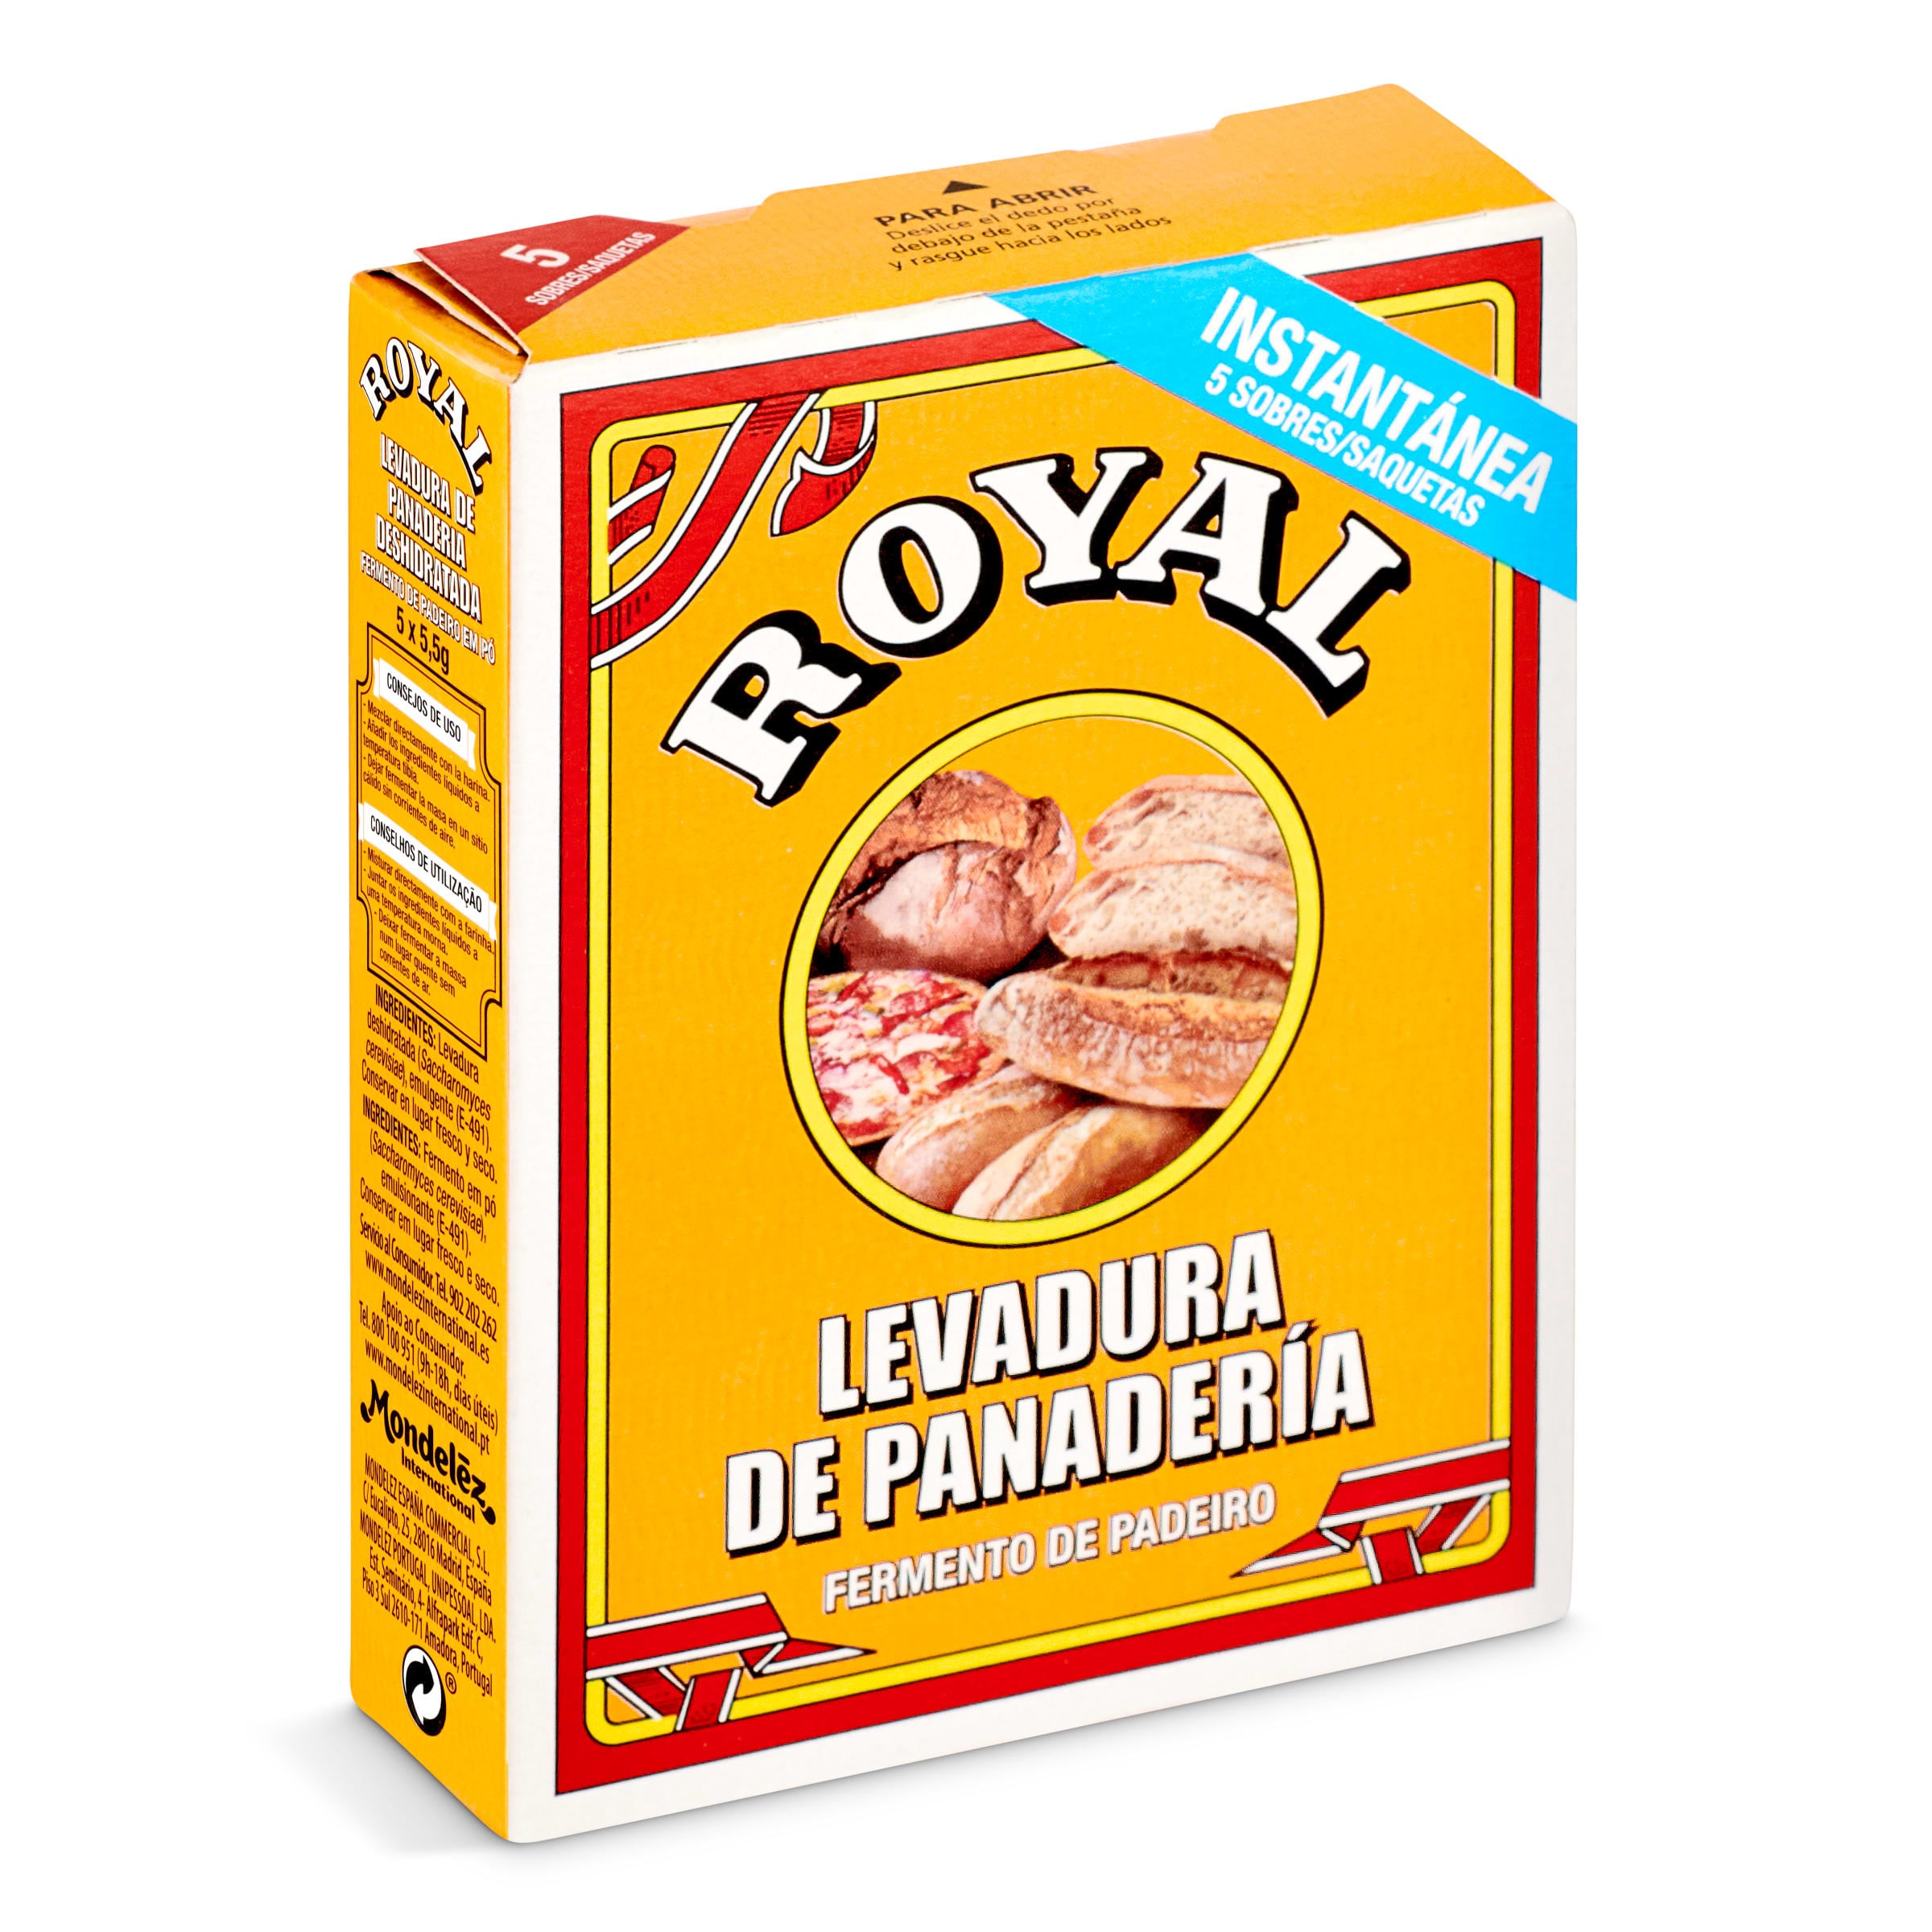 Levadura de panadería Royal caja 27.5 g - Supermercados DIA